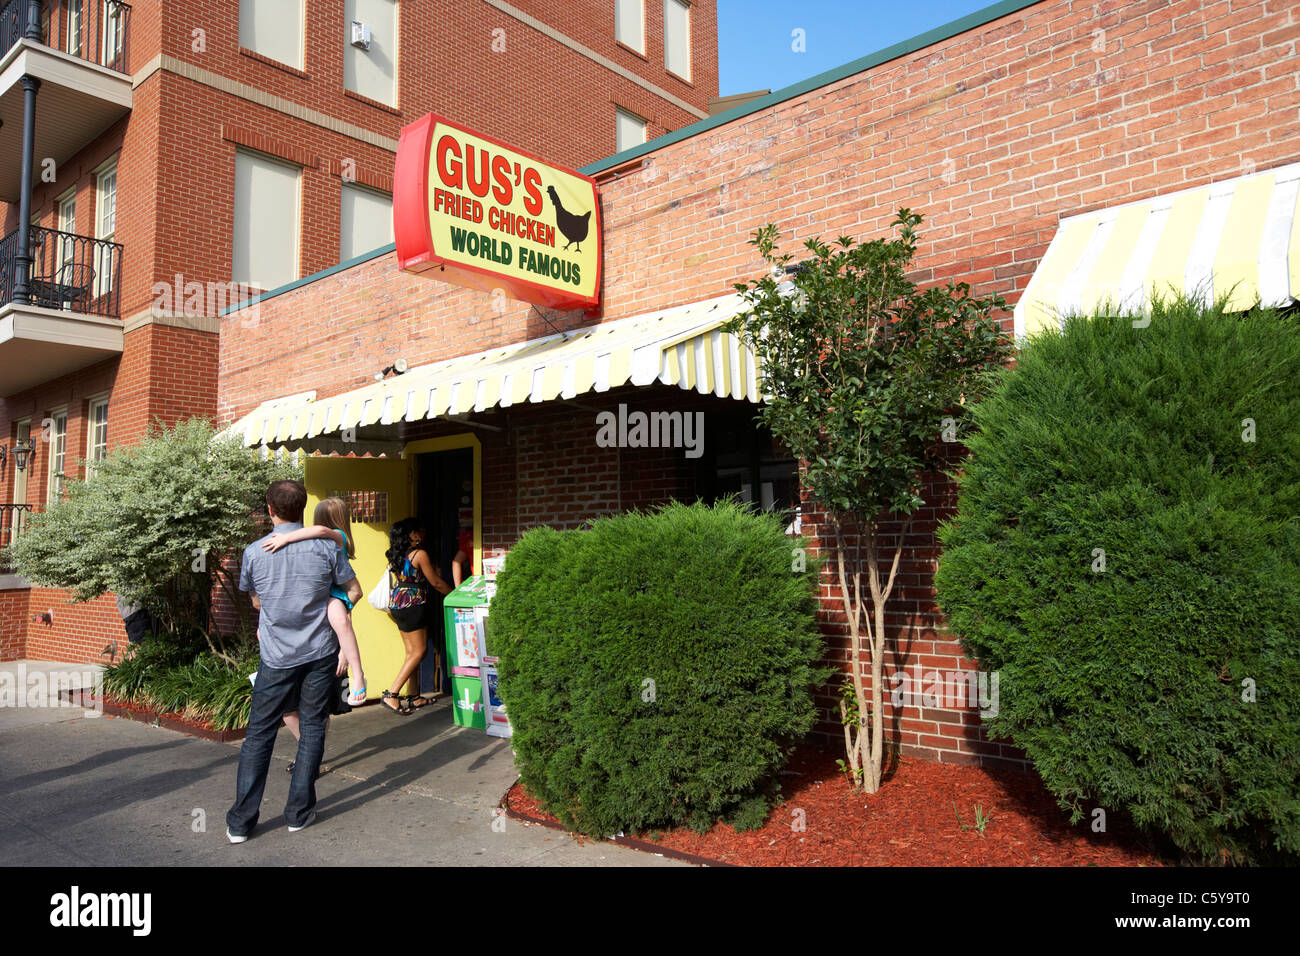 Les gens en dehors de la file d'gus mot célèbre fried chicken shop Memphis Tennessee usa Banque D'Images